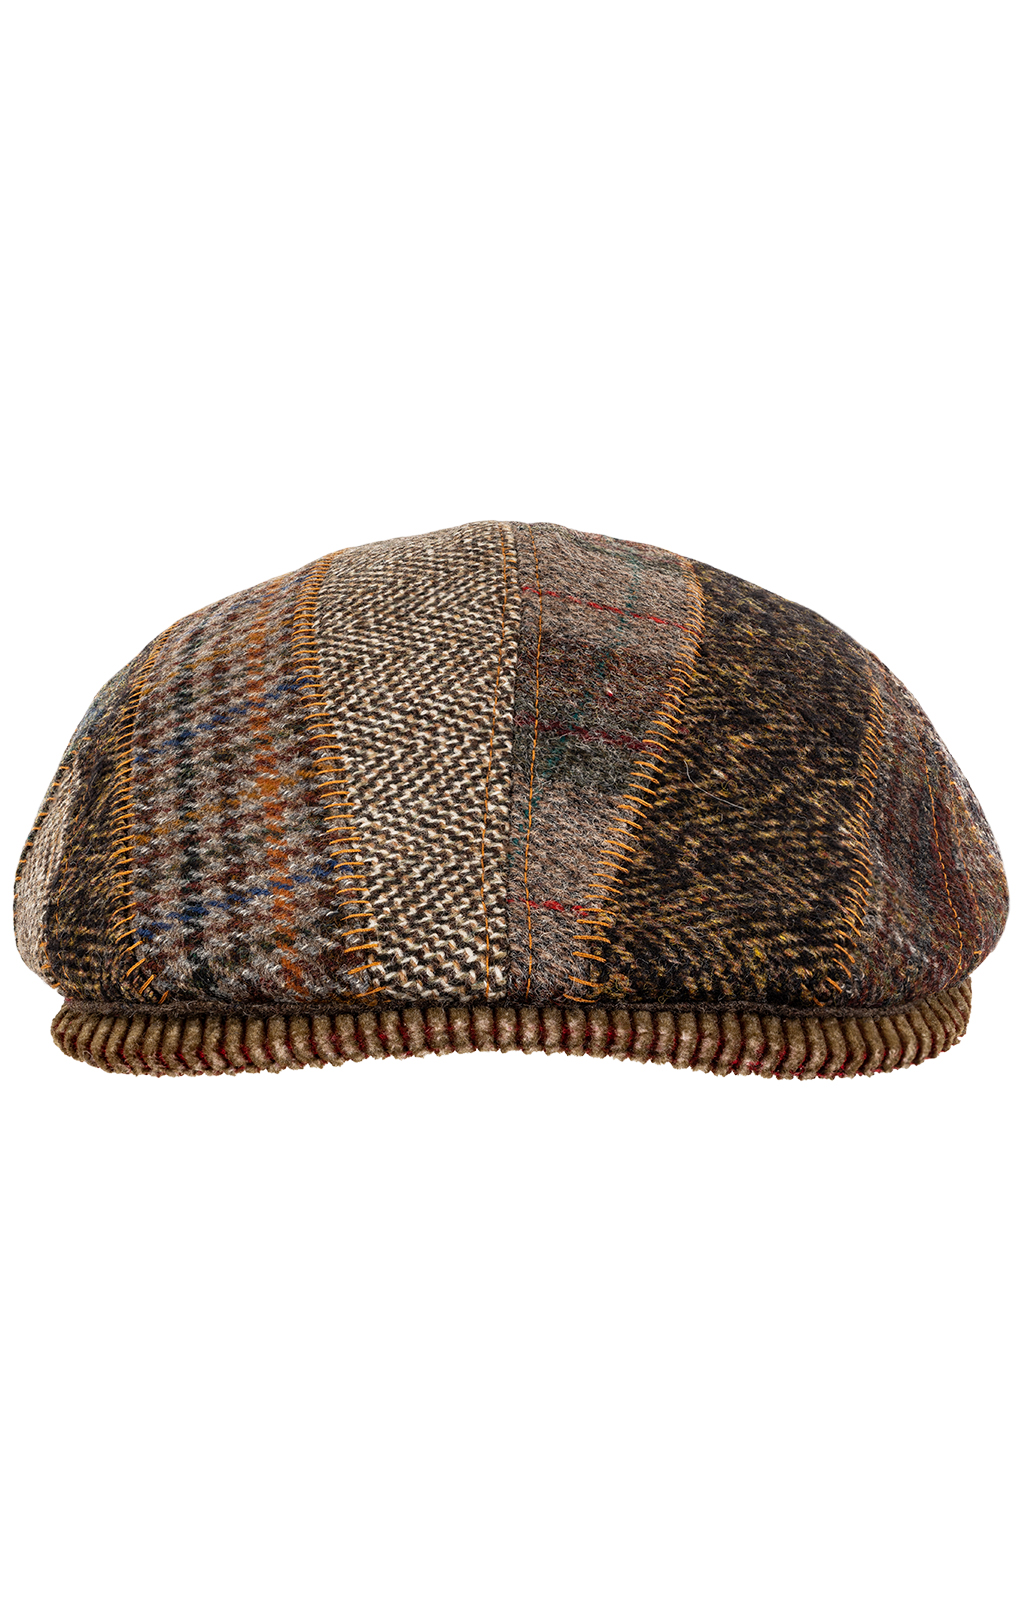 weitere Bilder von Trachten Hats 54001 patch brown